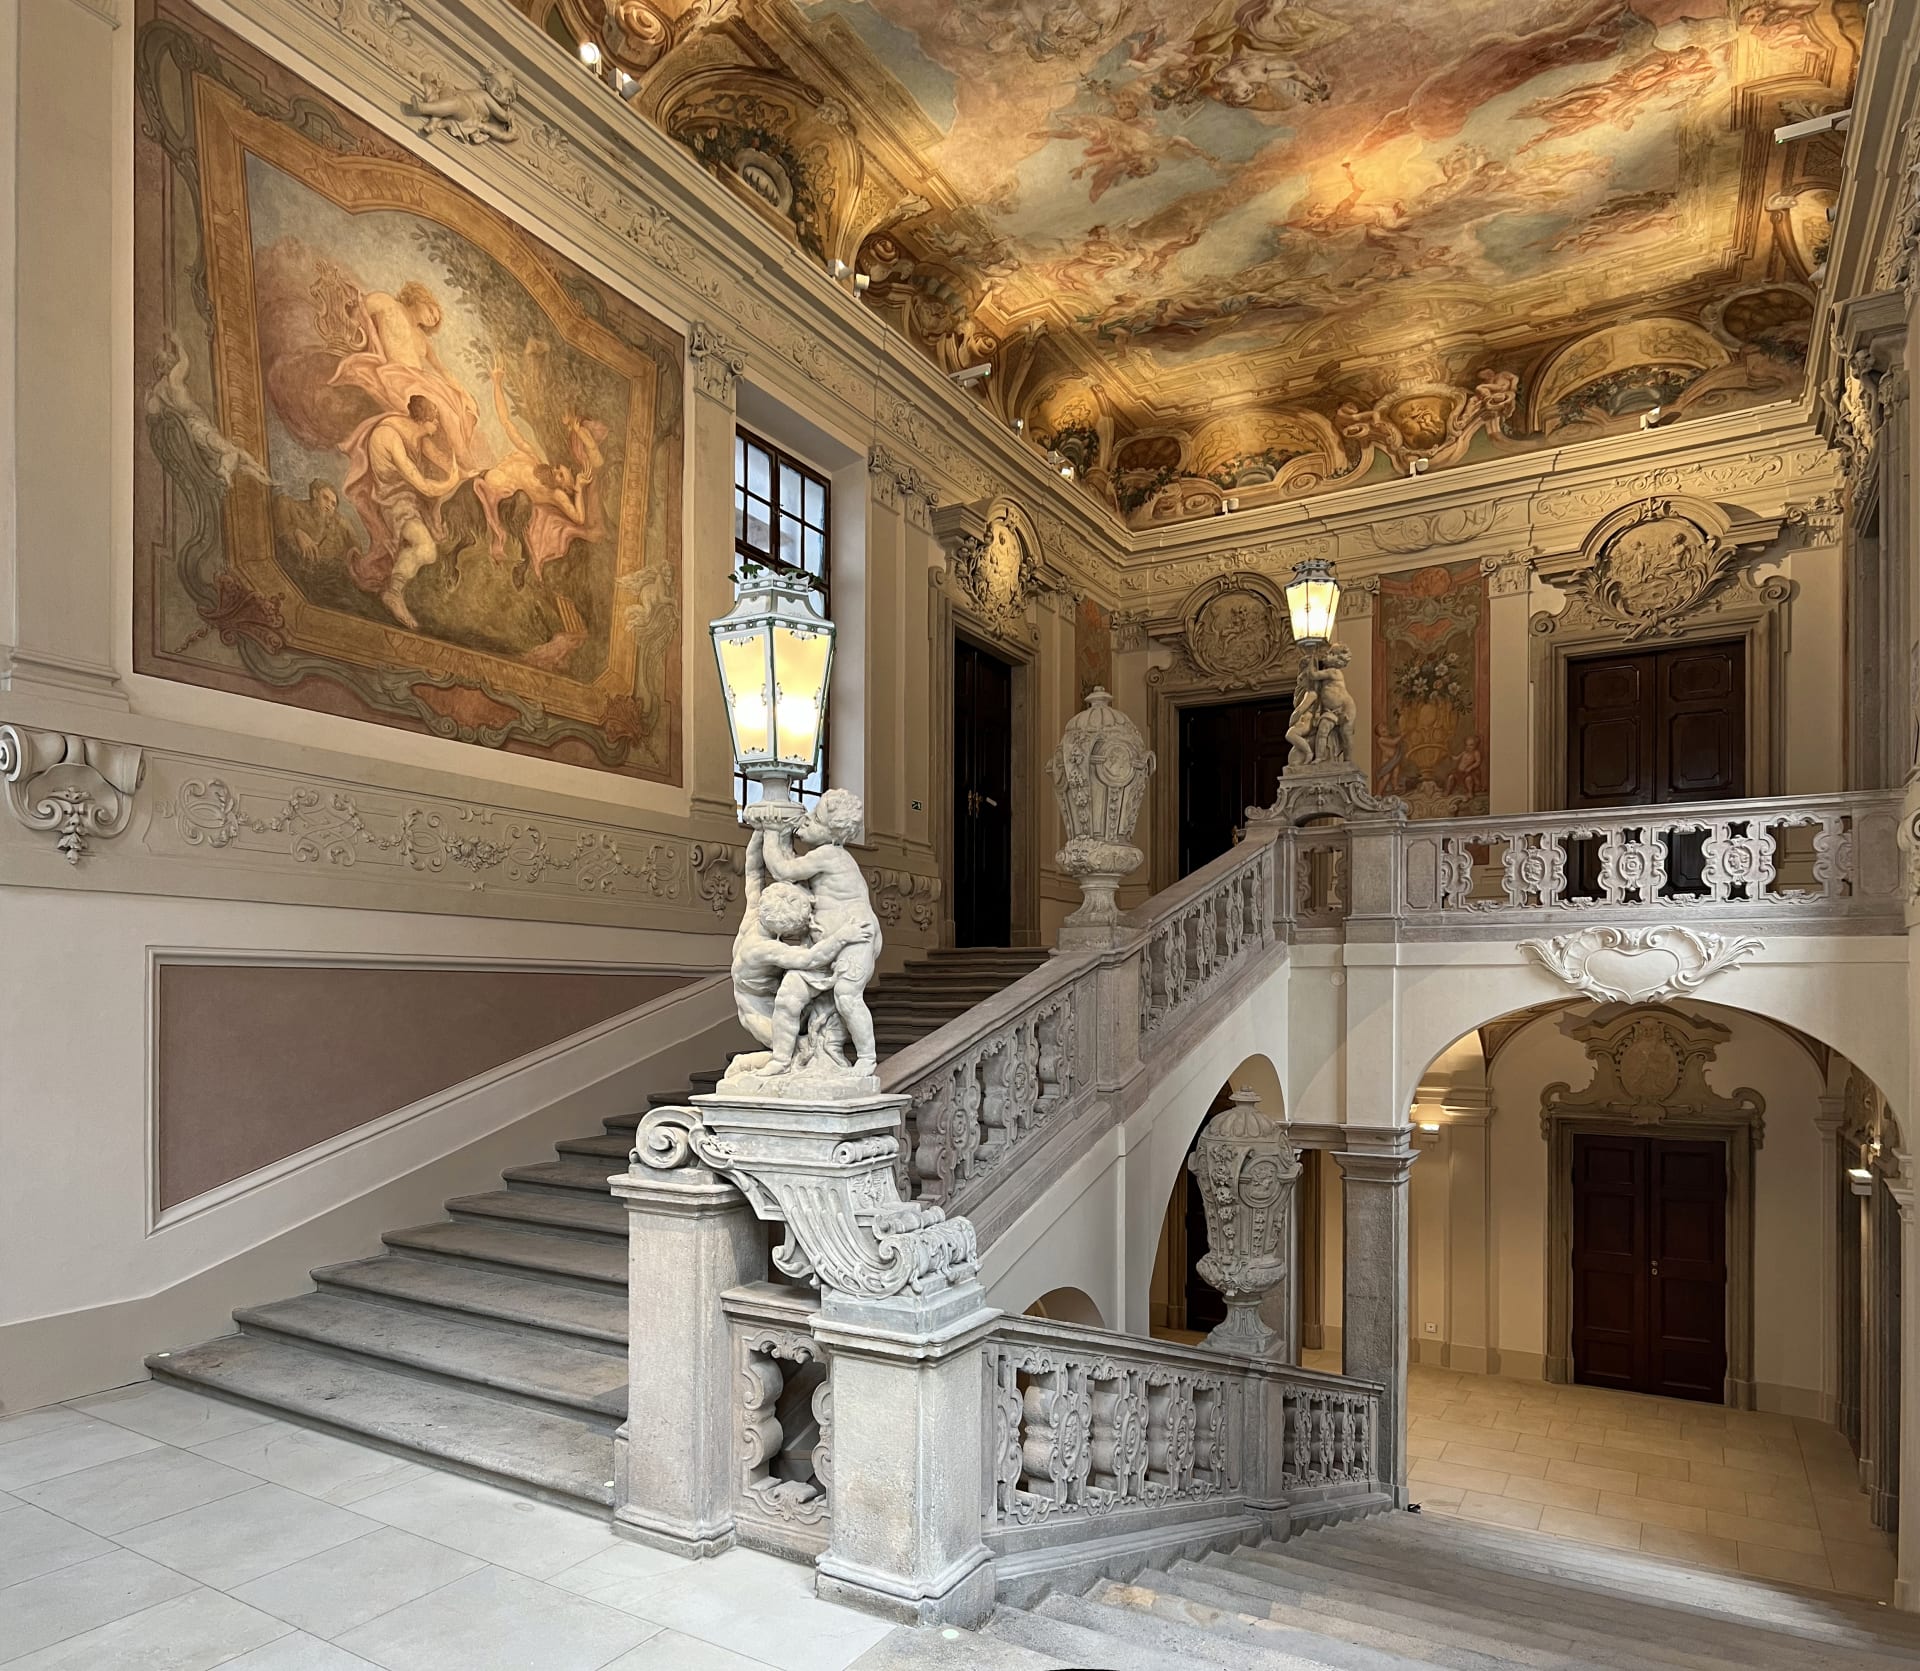 Clam-Gallasův palác byl vystavěn v první třetině 18. století dle mimořádného projektu dvorského architekta Johanna Bernharda Fischera z Erlachu.